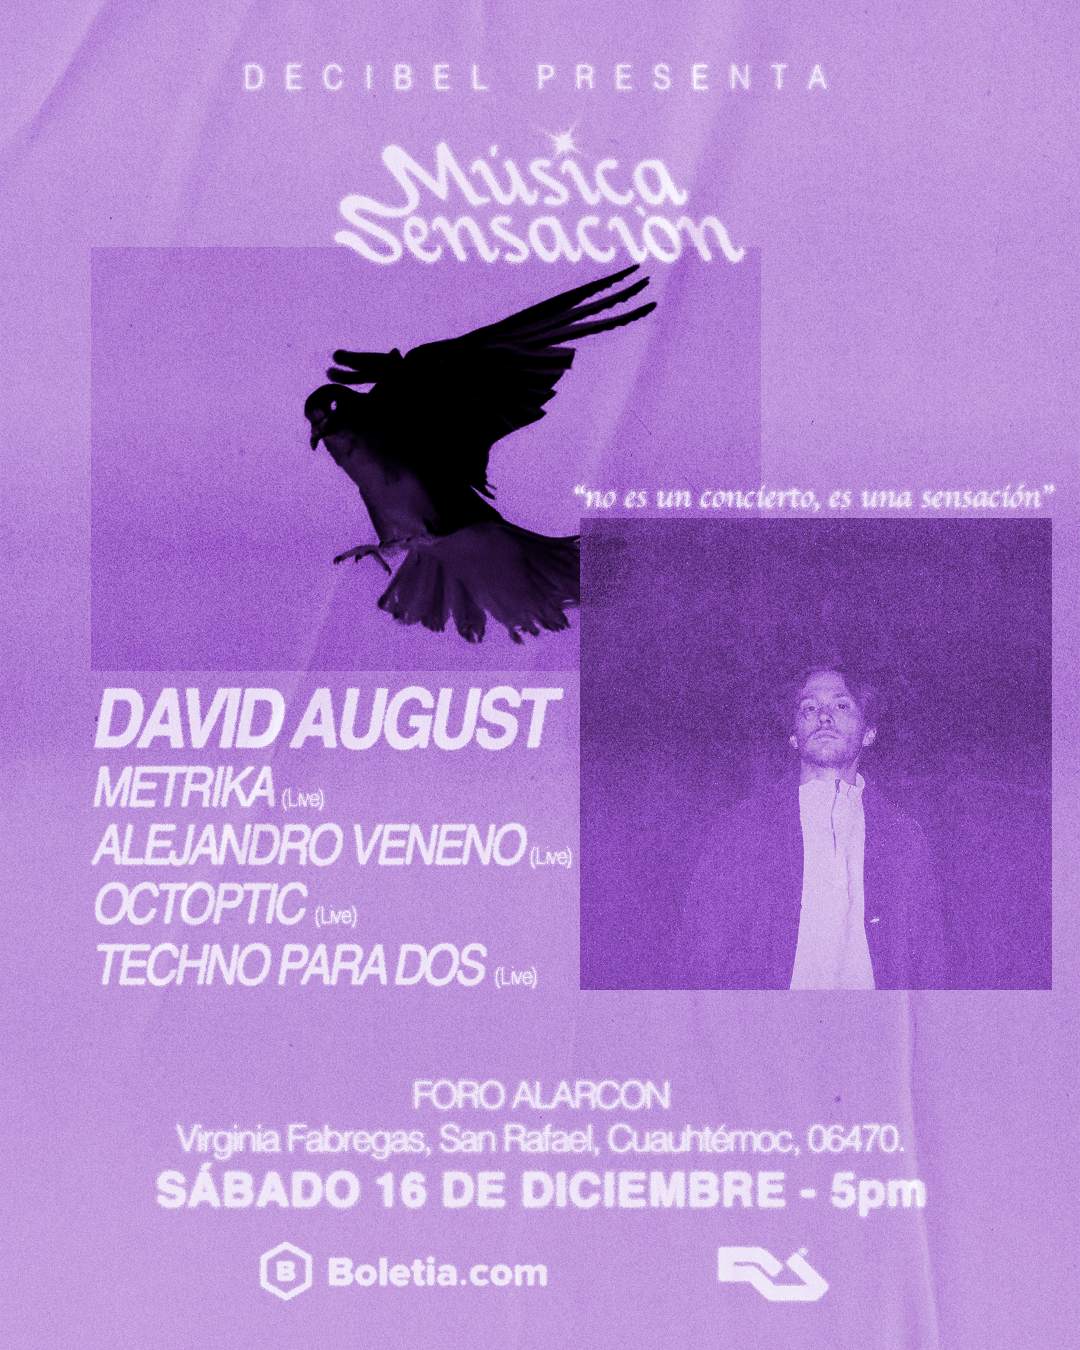 [CANCELLED] David August x Música Sensación - Página trasera